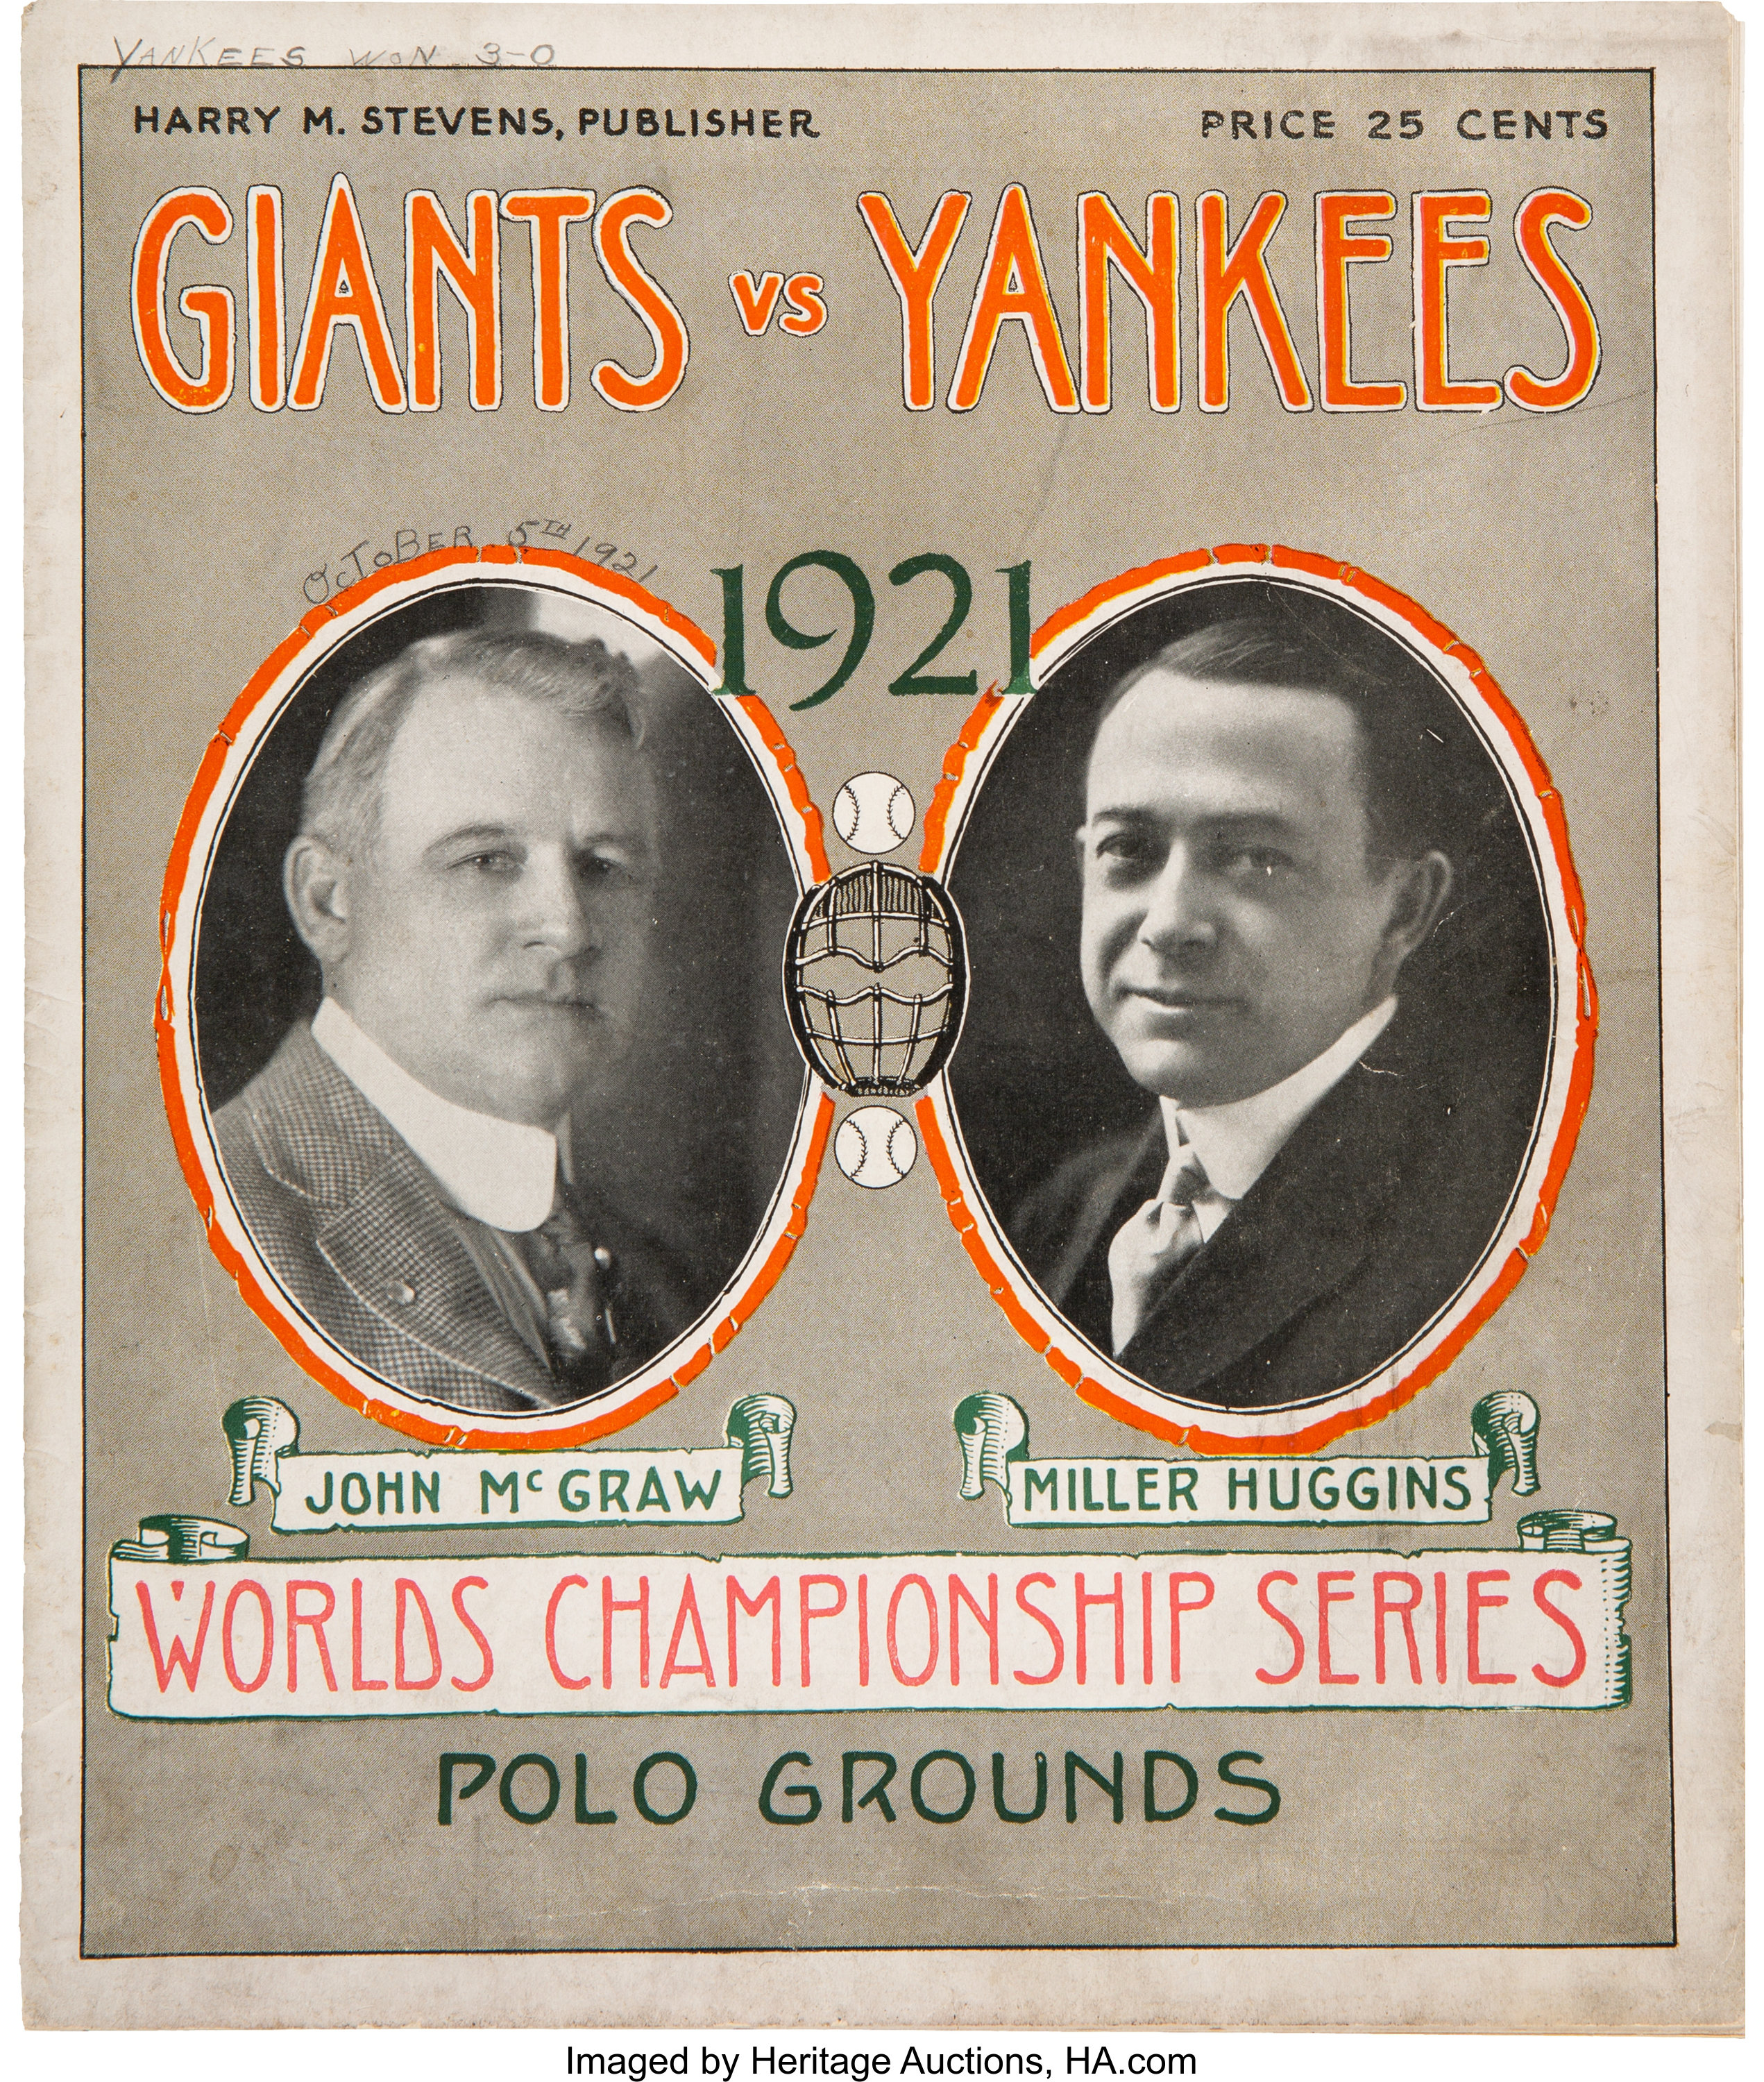 1921 New York Giants vs. New York Yankees World Series Program